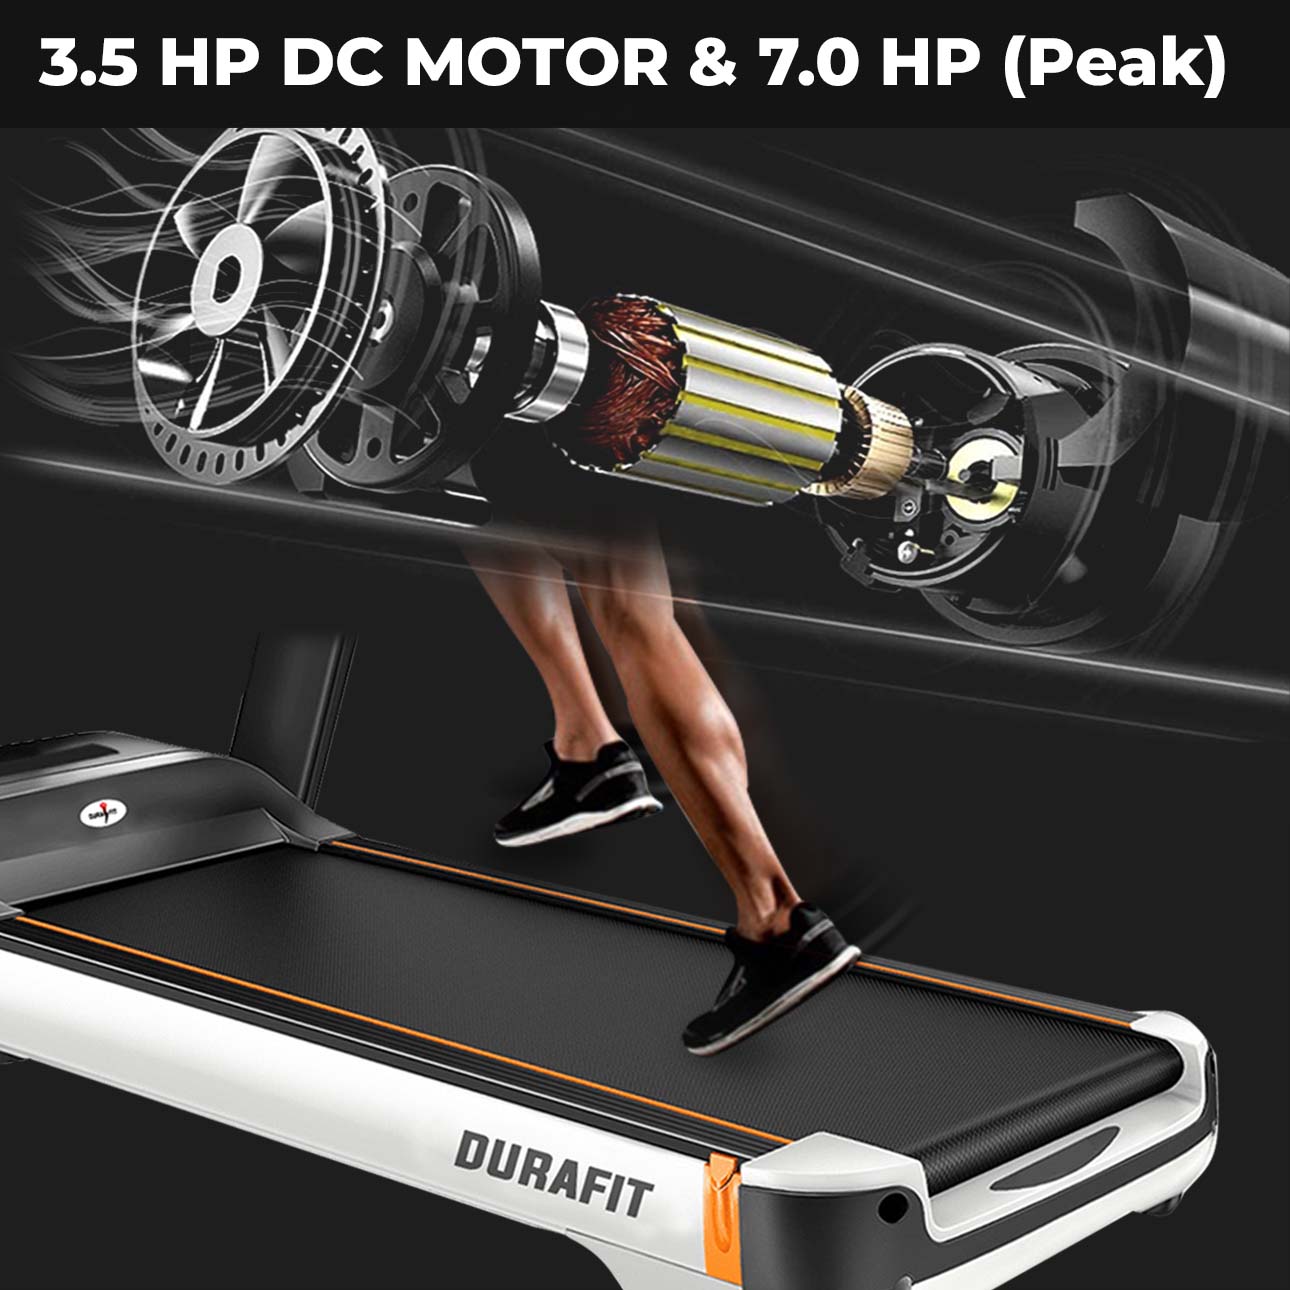 Durafit Focus Multifunction Treadmill 3.5 HP DC Motor